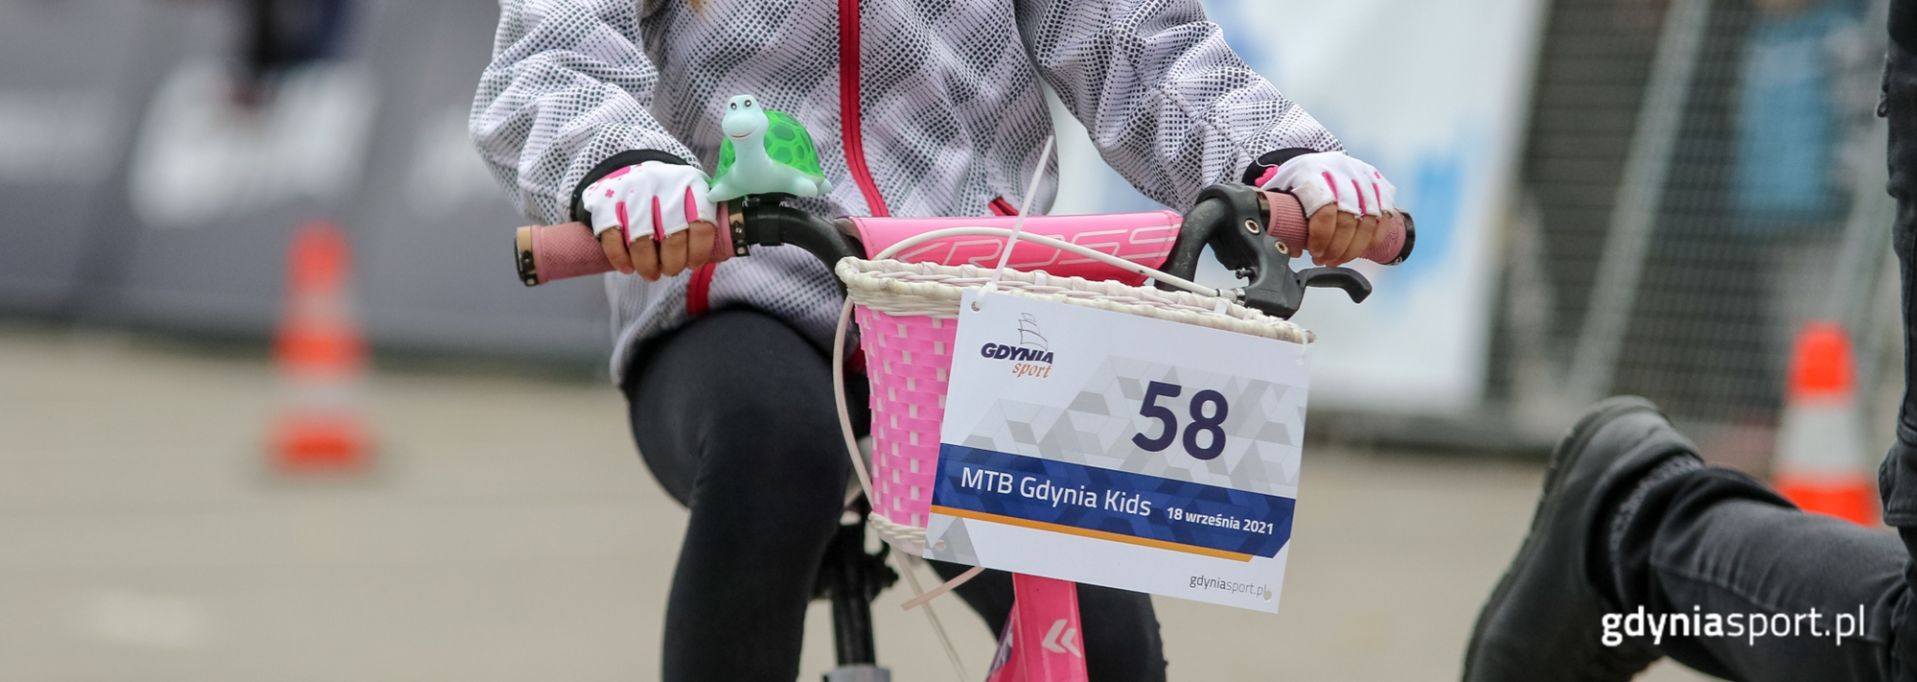 Dzieci podczas zawodów rowerowych MTB Gdynia Kids 2021 